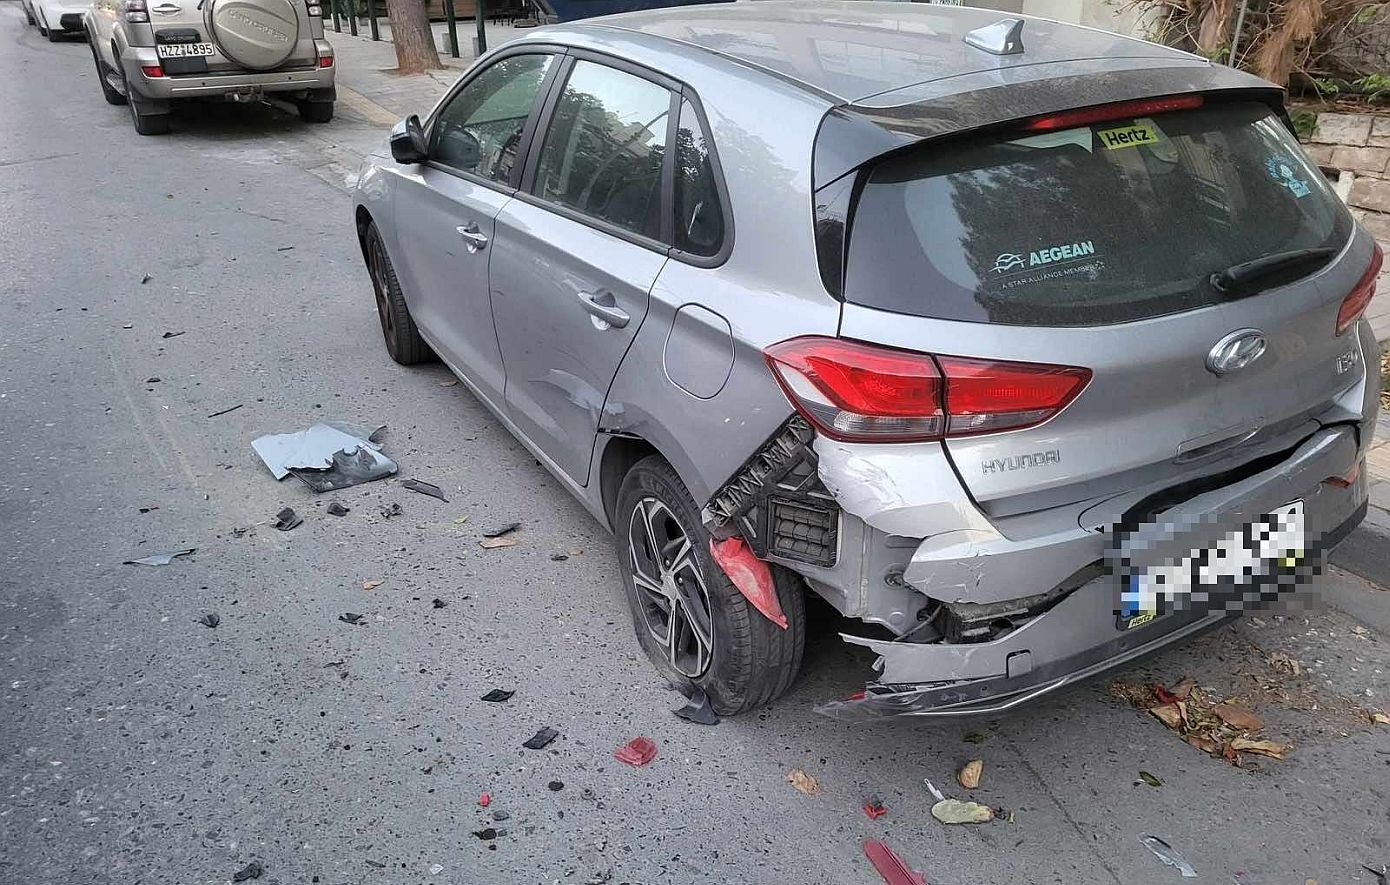 Τρελή πορεία αυτοκινήτου στο Ηράκλειο: Έπεσε πάνω σε σταθμευμένα οχήματα &#8211; Ο οδηγός εξαφανίστηκε